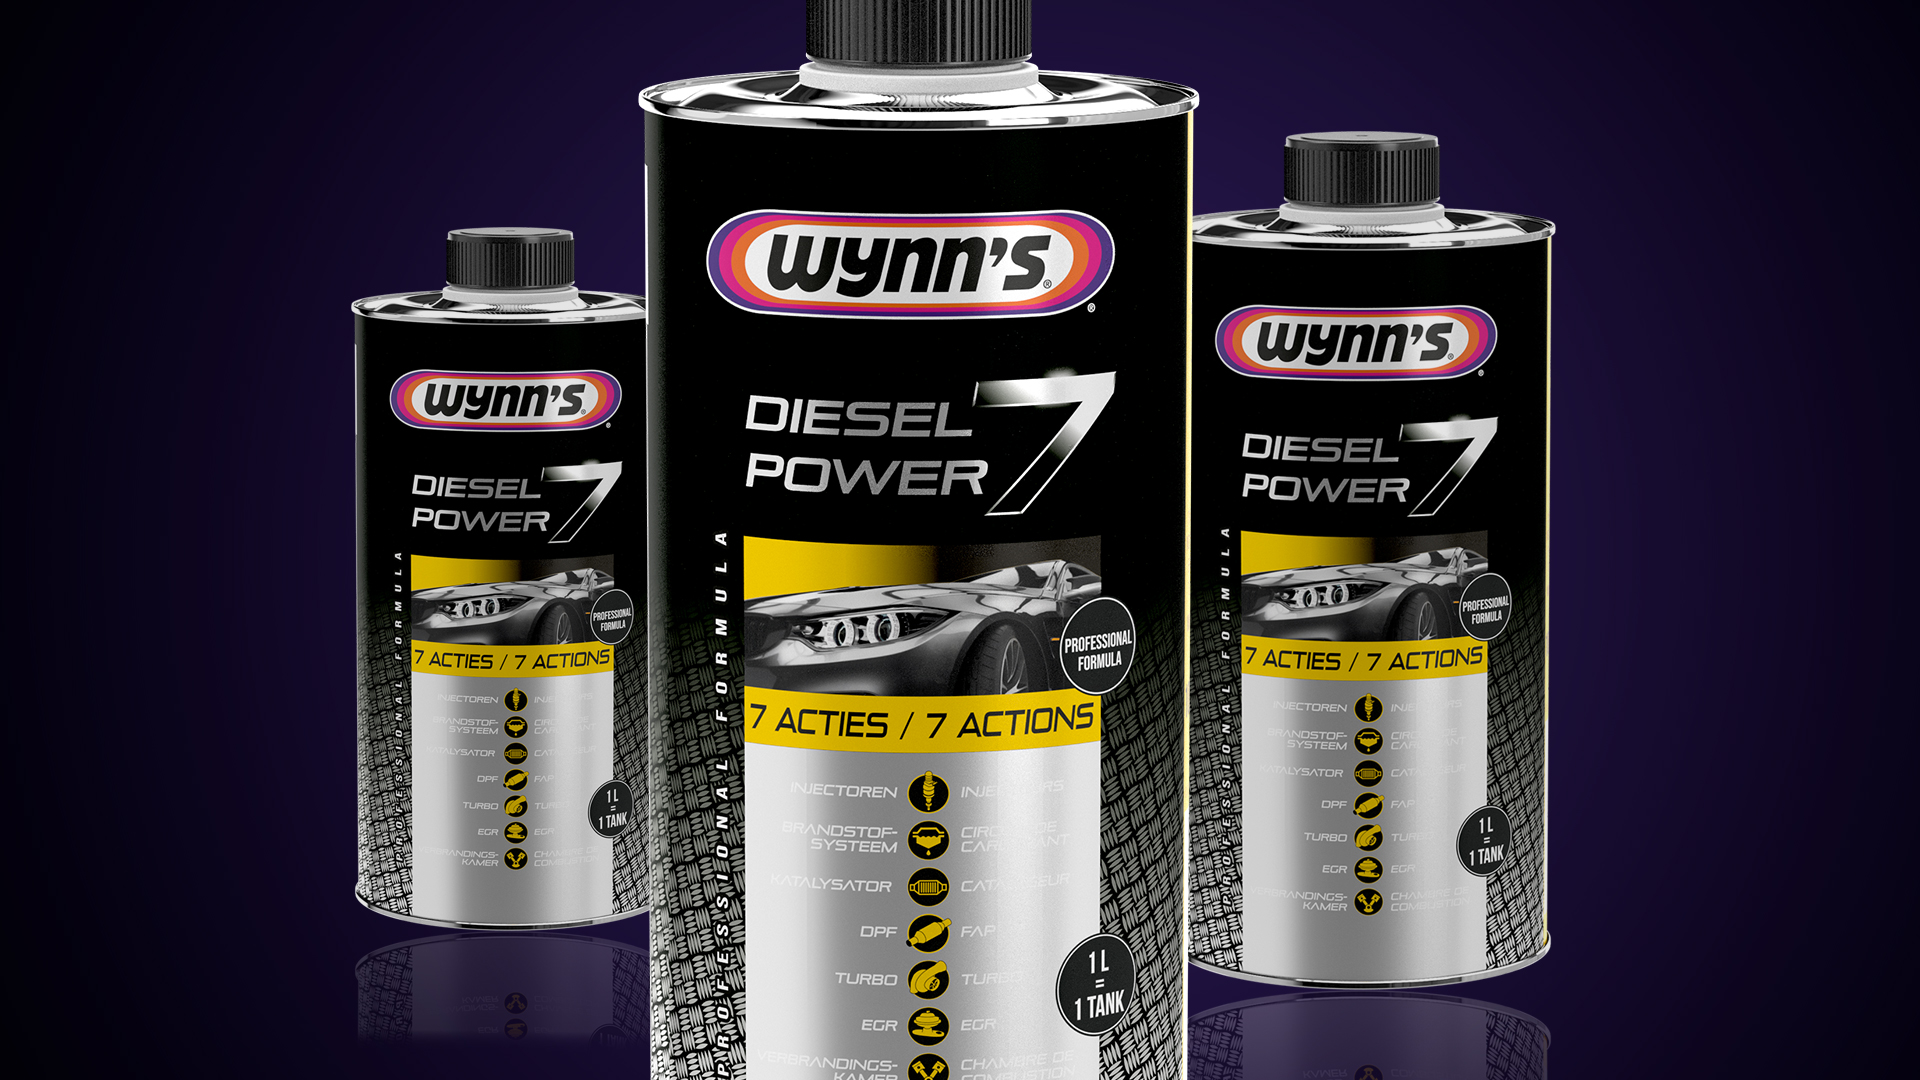 Introducing Wynn's Diesel Power 7 1000ml: The Ultimate Diesel